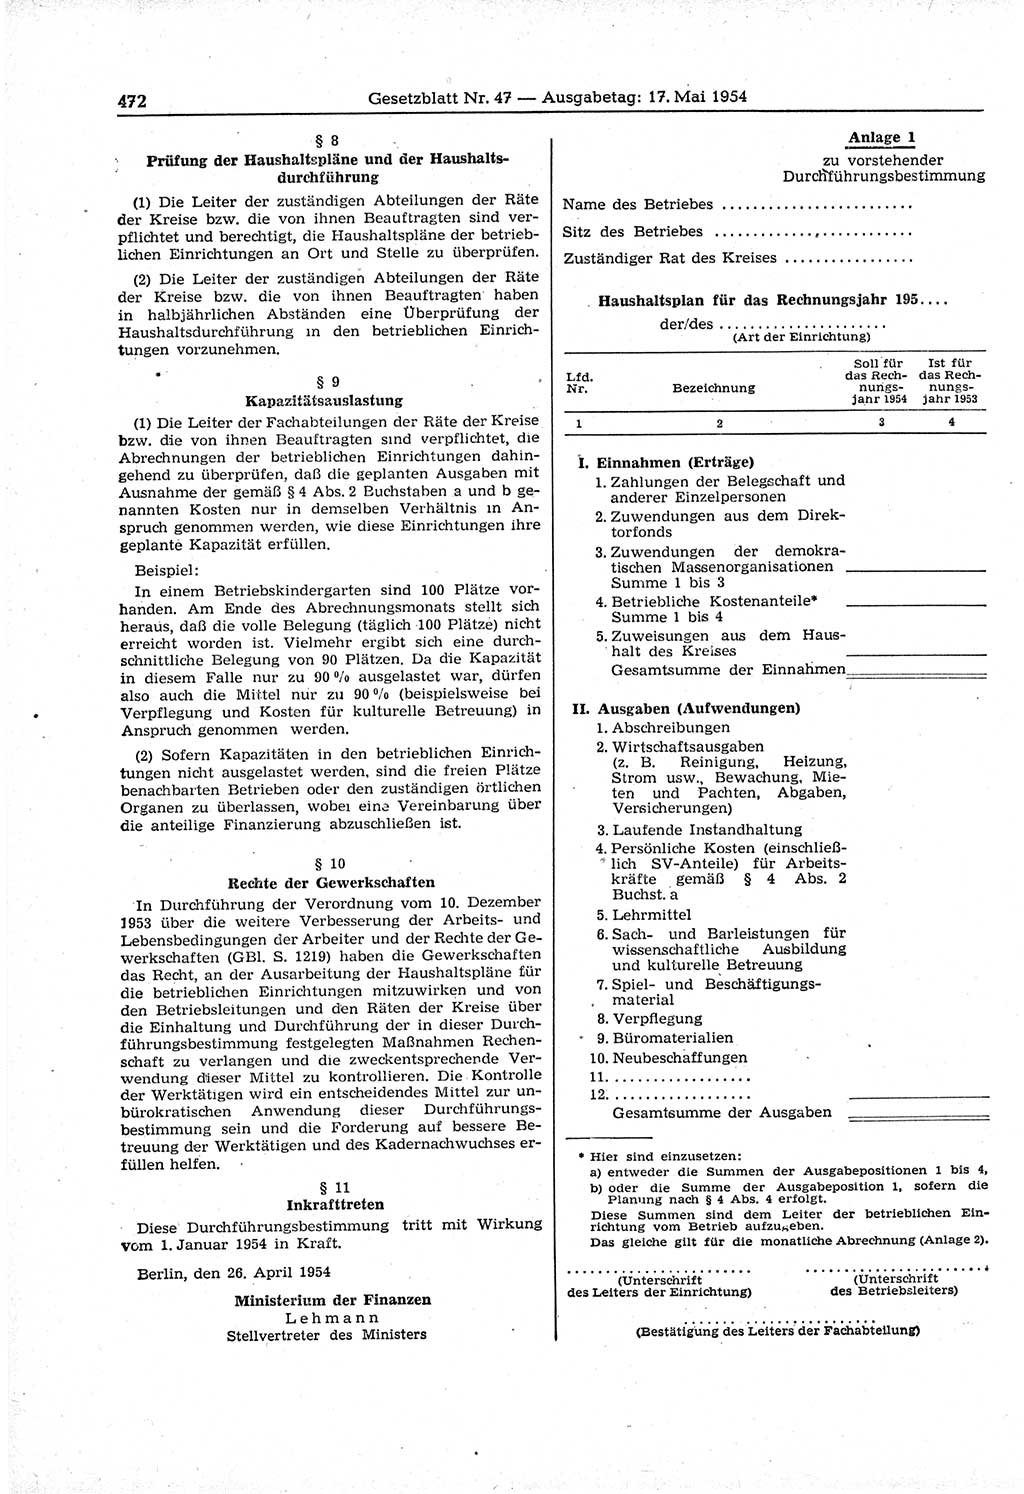 Gesetzblatt (GBl.) der Deutschen Demokratischen Republik (DDR) 1954, Seite 472 (GBl. DDR 1954, S. 472)